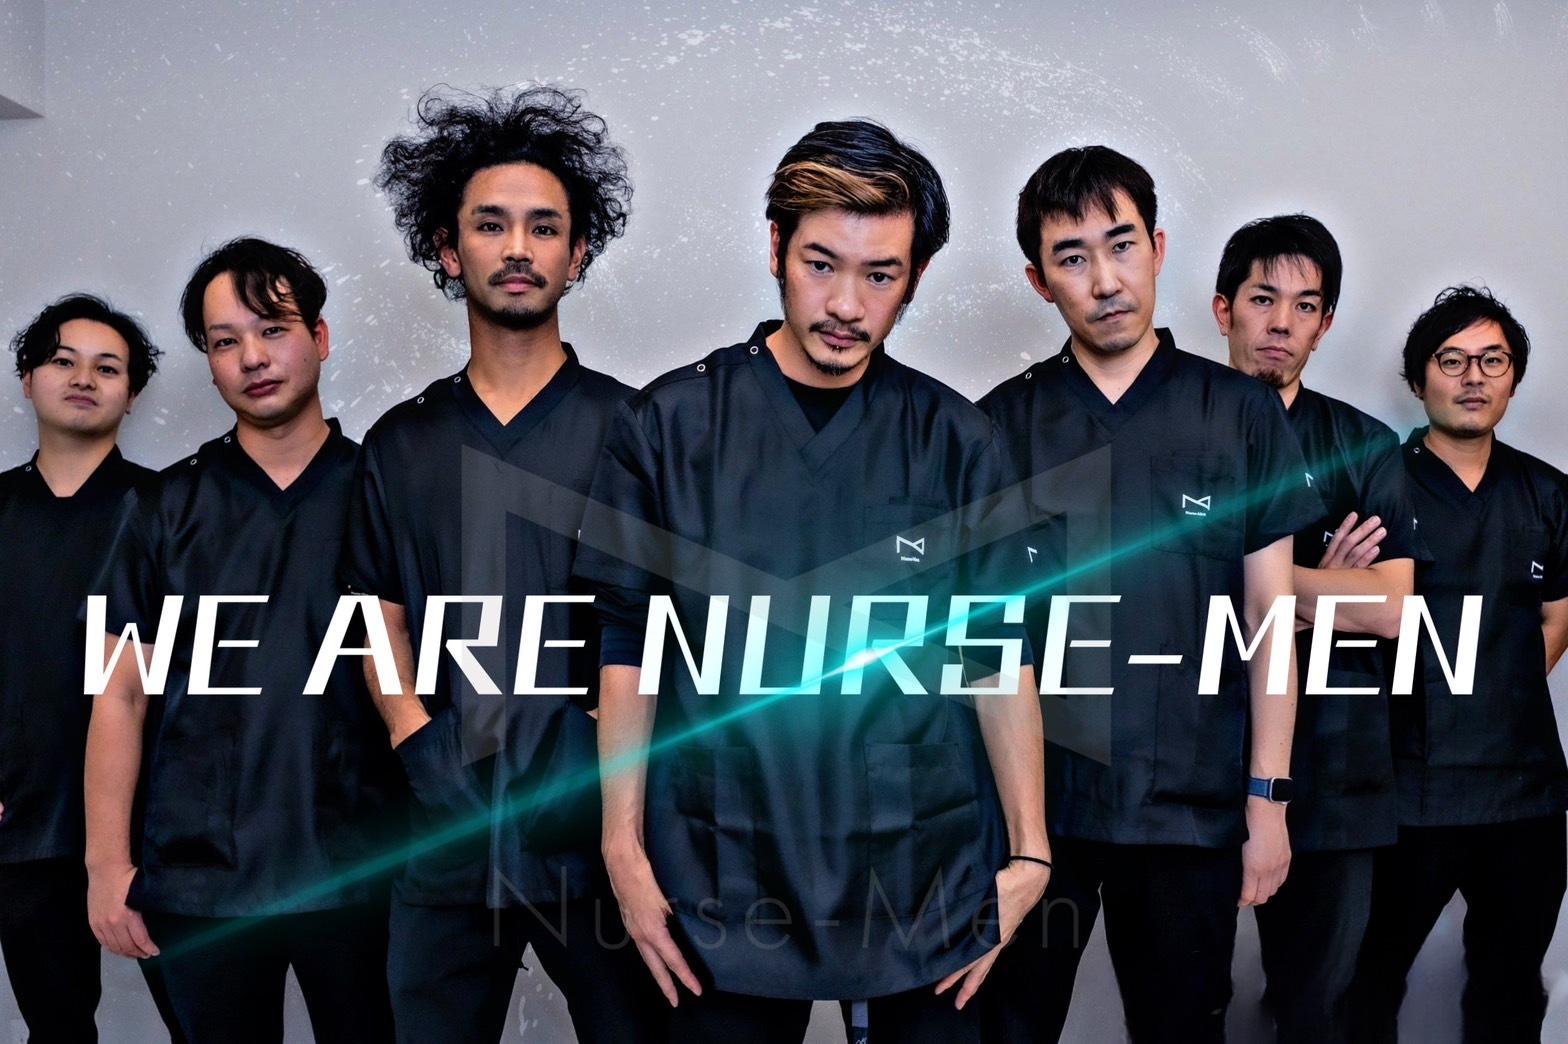 Nurse-Men